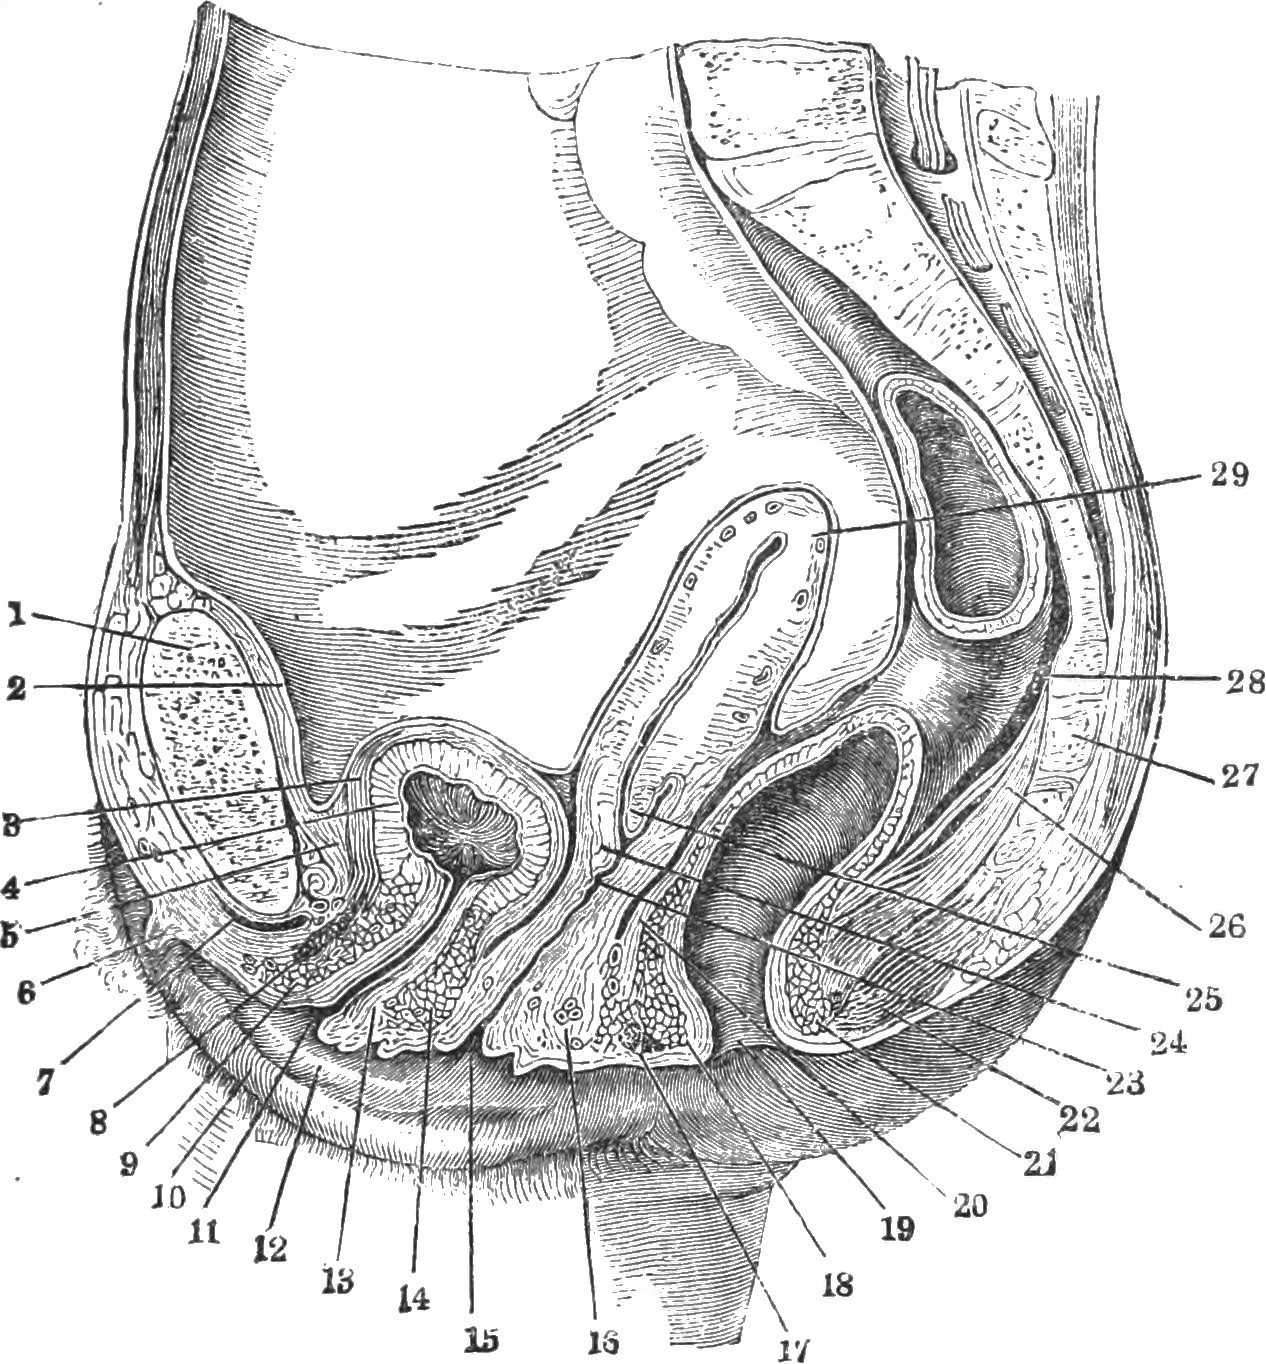 vaginal g entry spot rear